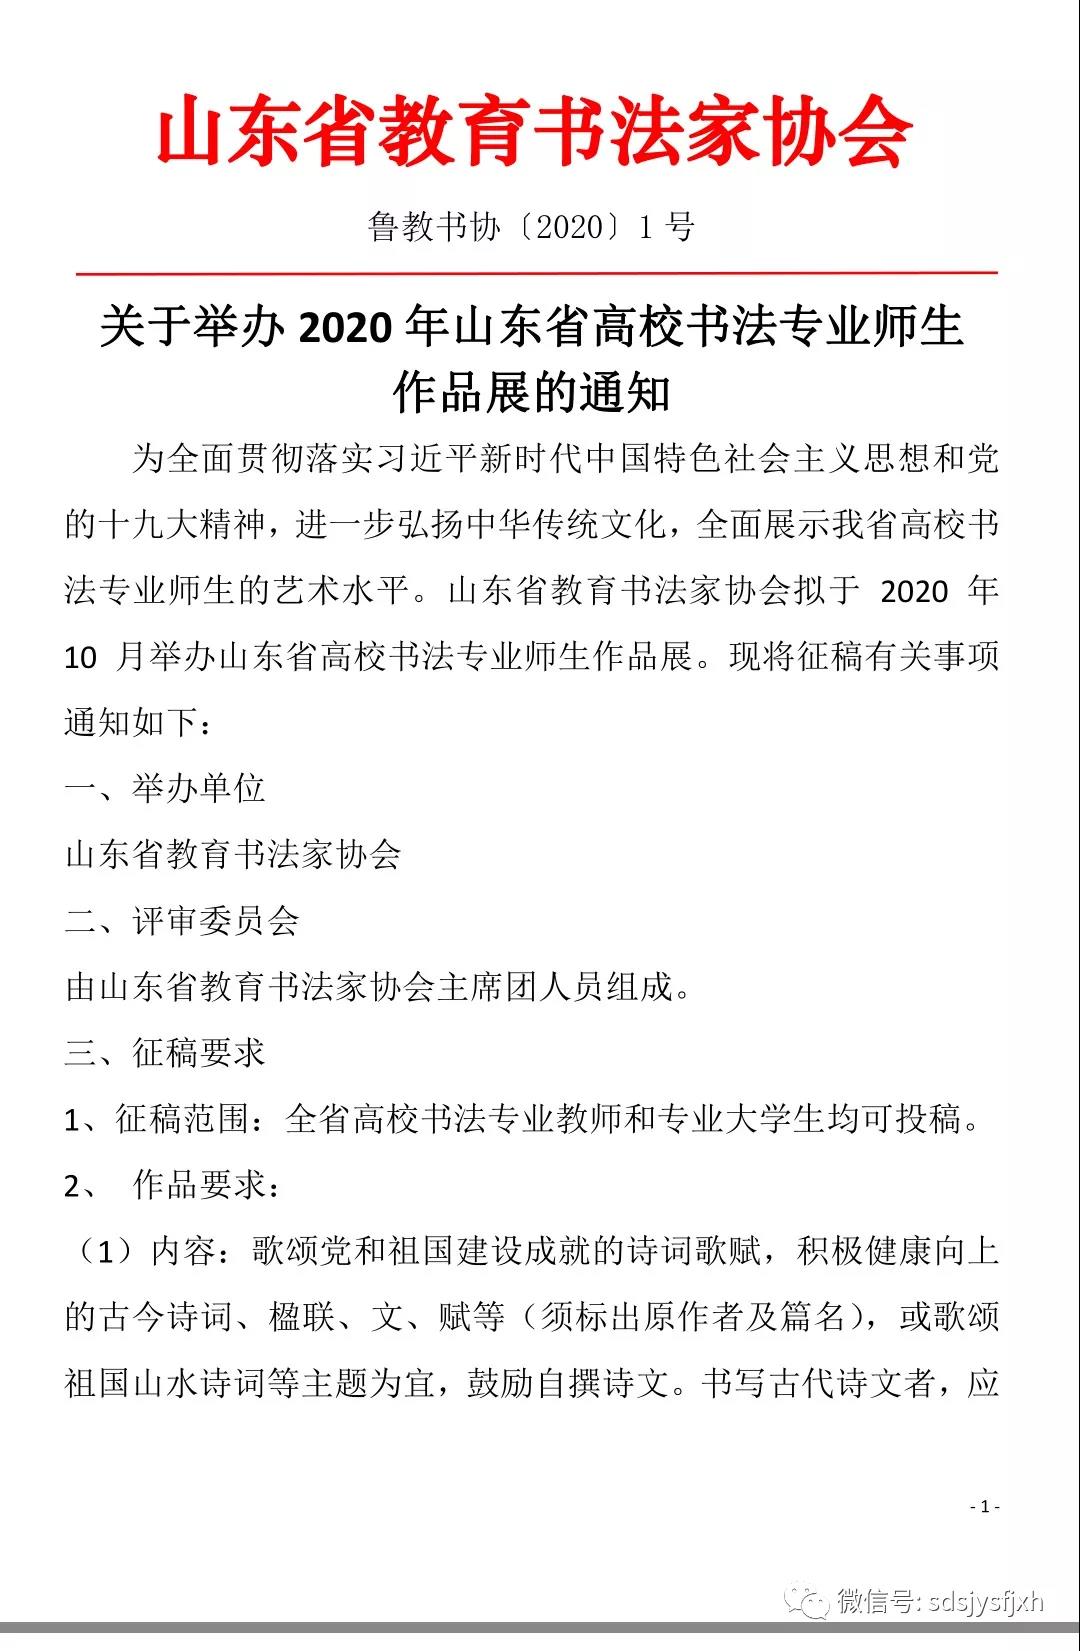 山东省教育书法家协会发布，关于举办2020年山东省高校书法专业师生作品展的通知